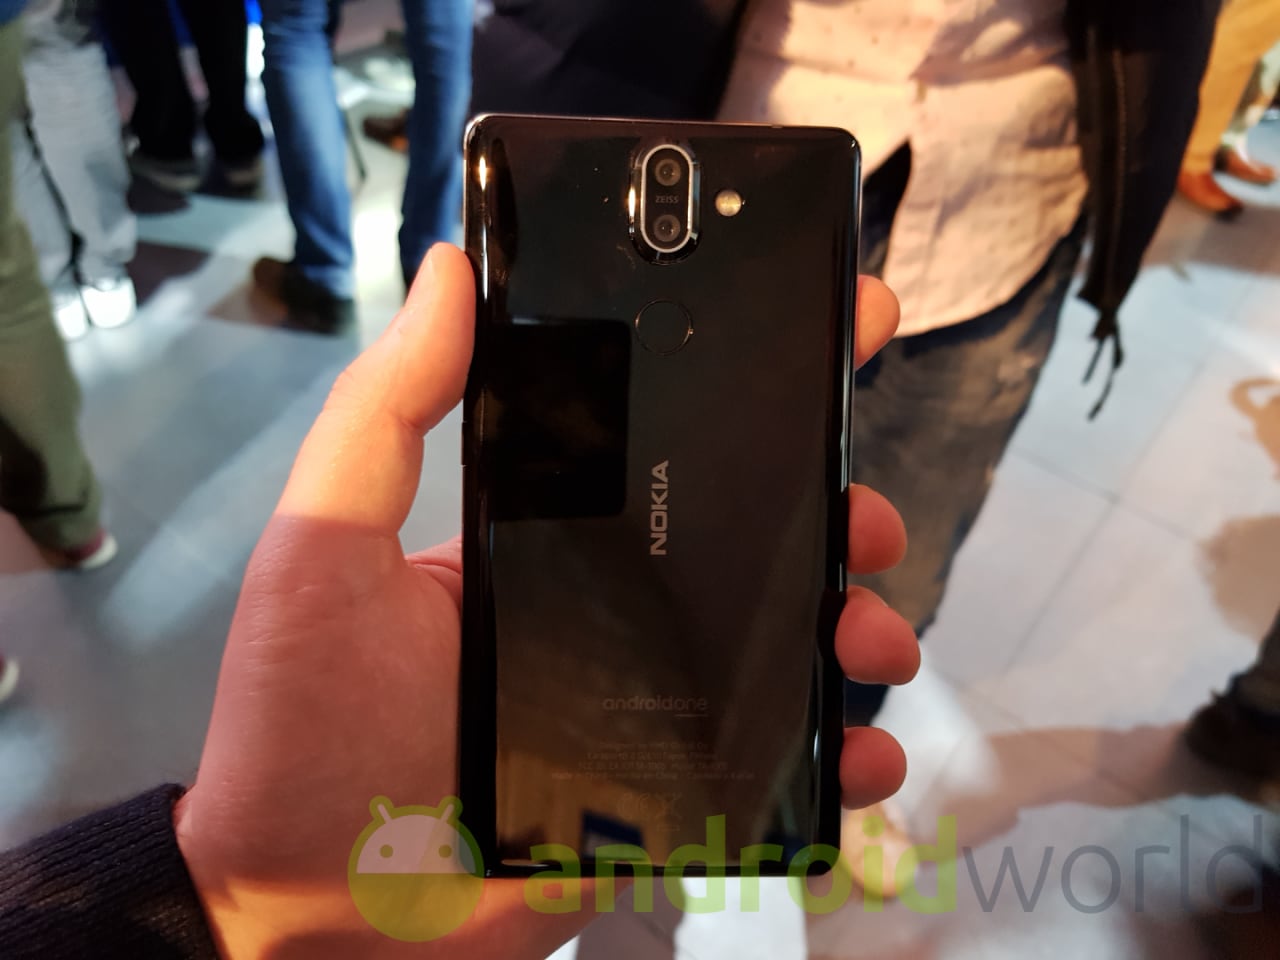 Nokia 8 Sirocco finalmente disponibile in Italia (video)